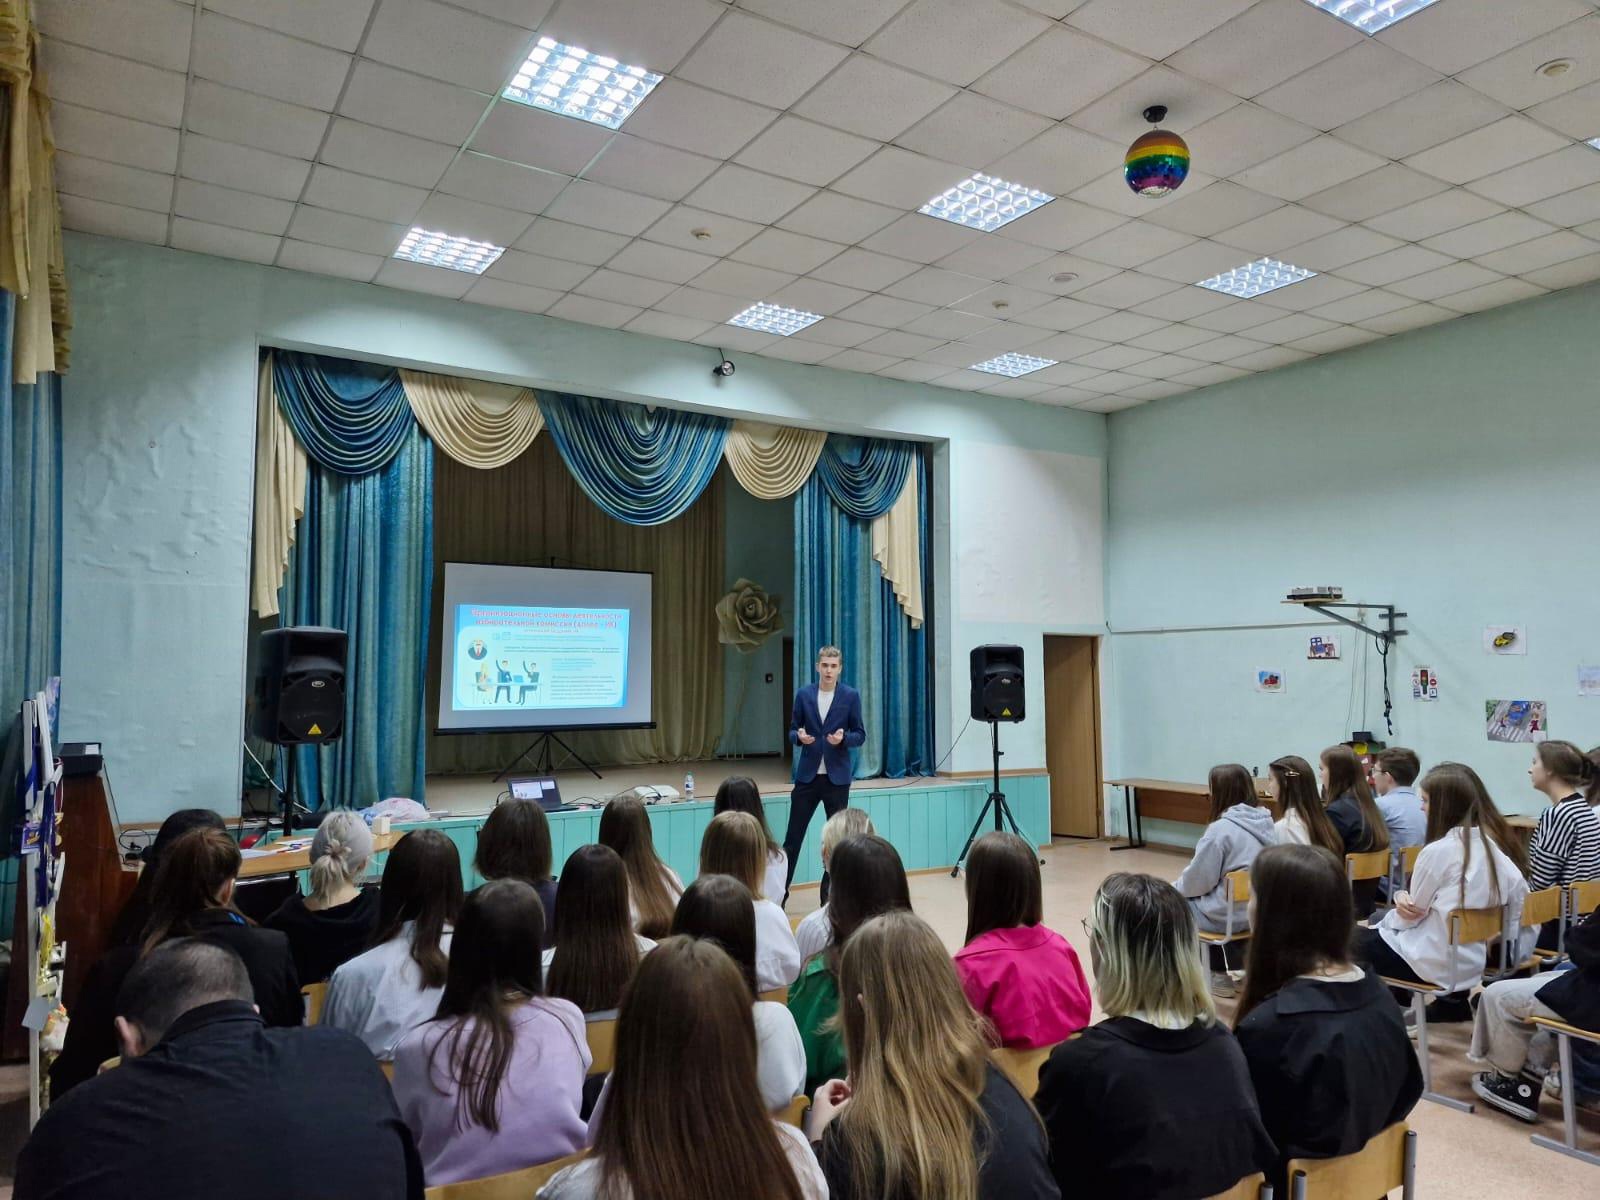 встреча старшеклассников с членом Молодежного парламента города Барнаула.